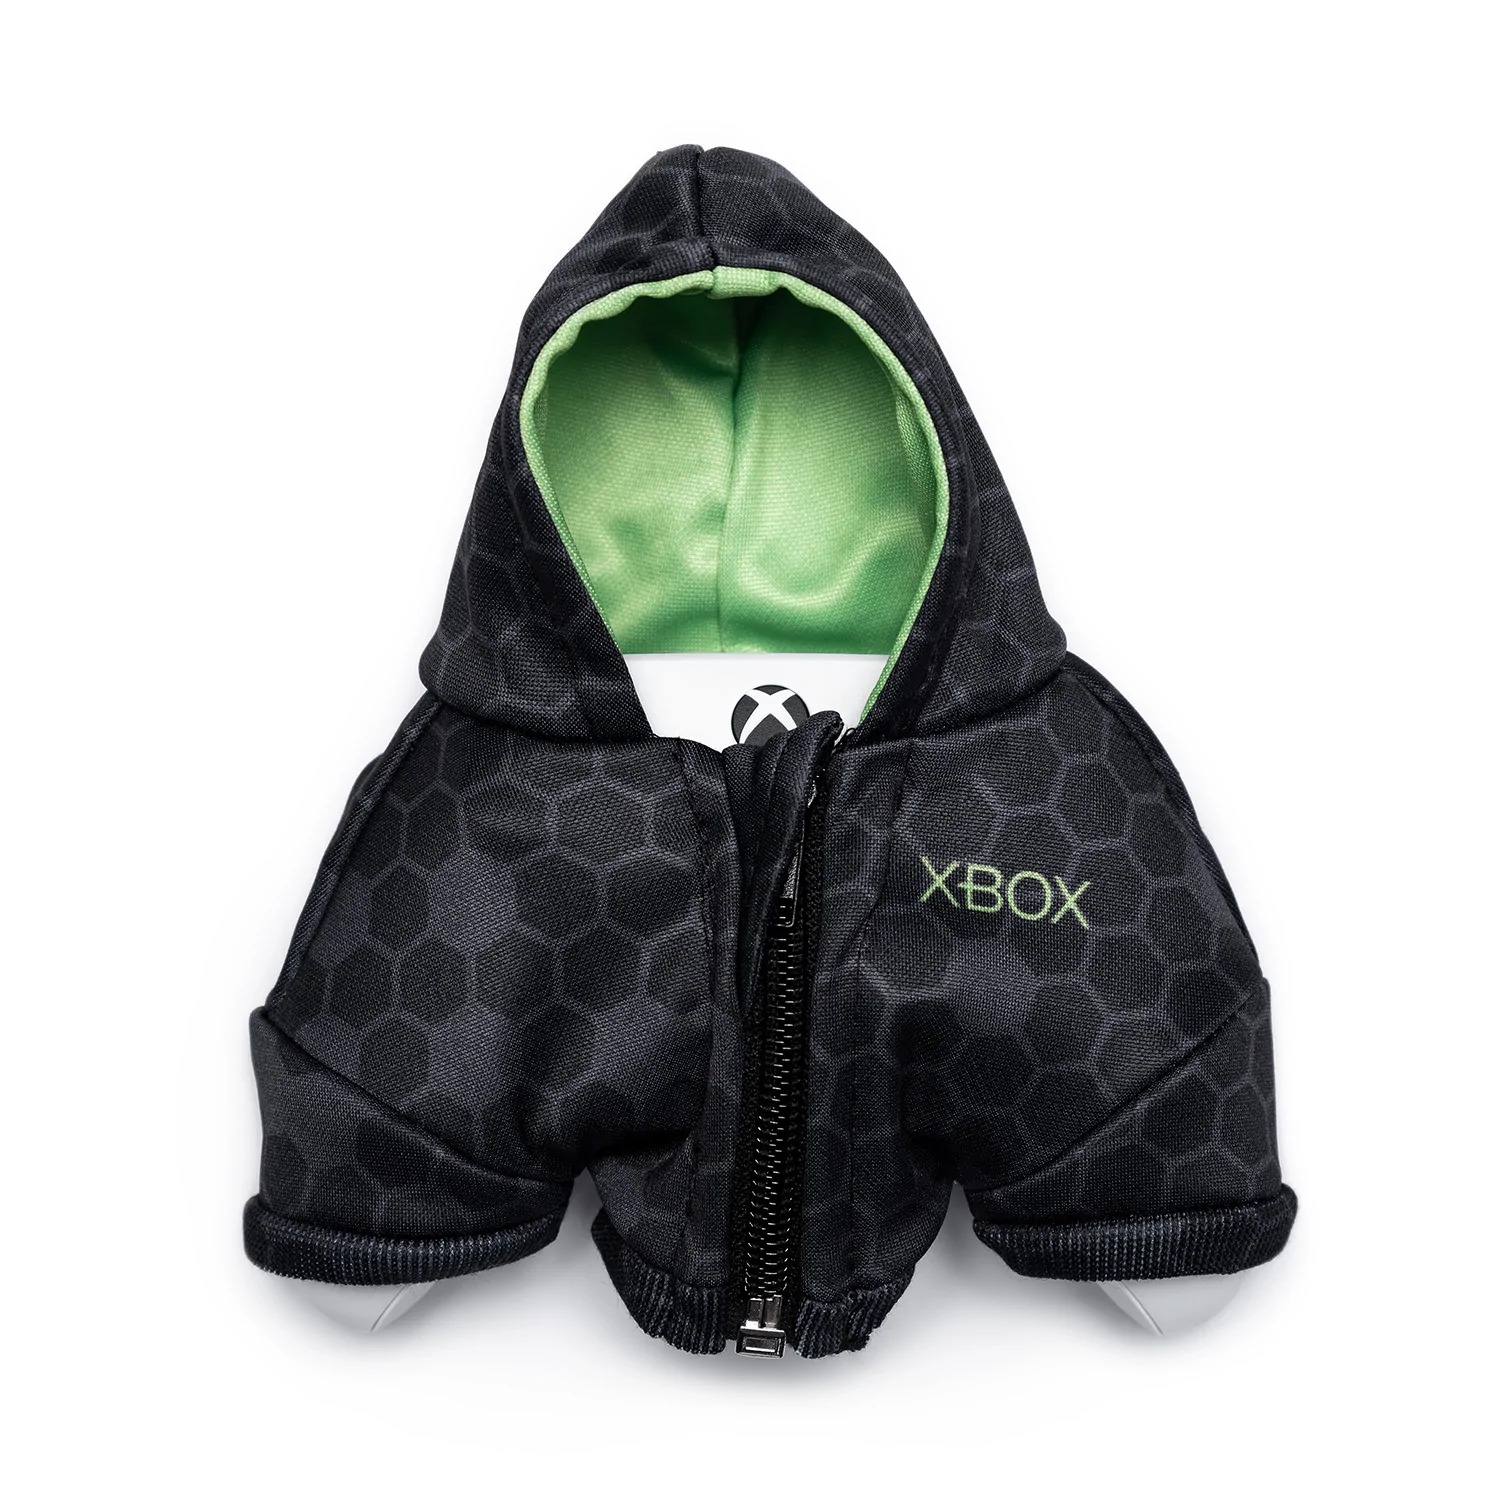 Quel dommage... ce hoodie pour manette Xbox ne sera pas dispo pour Noël